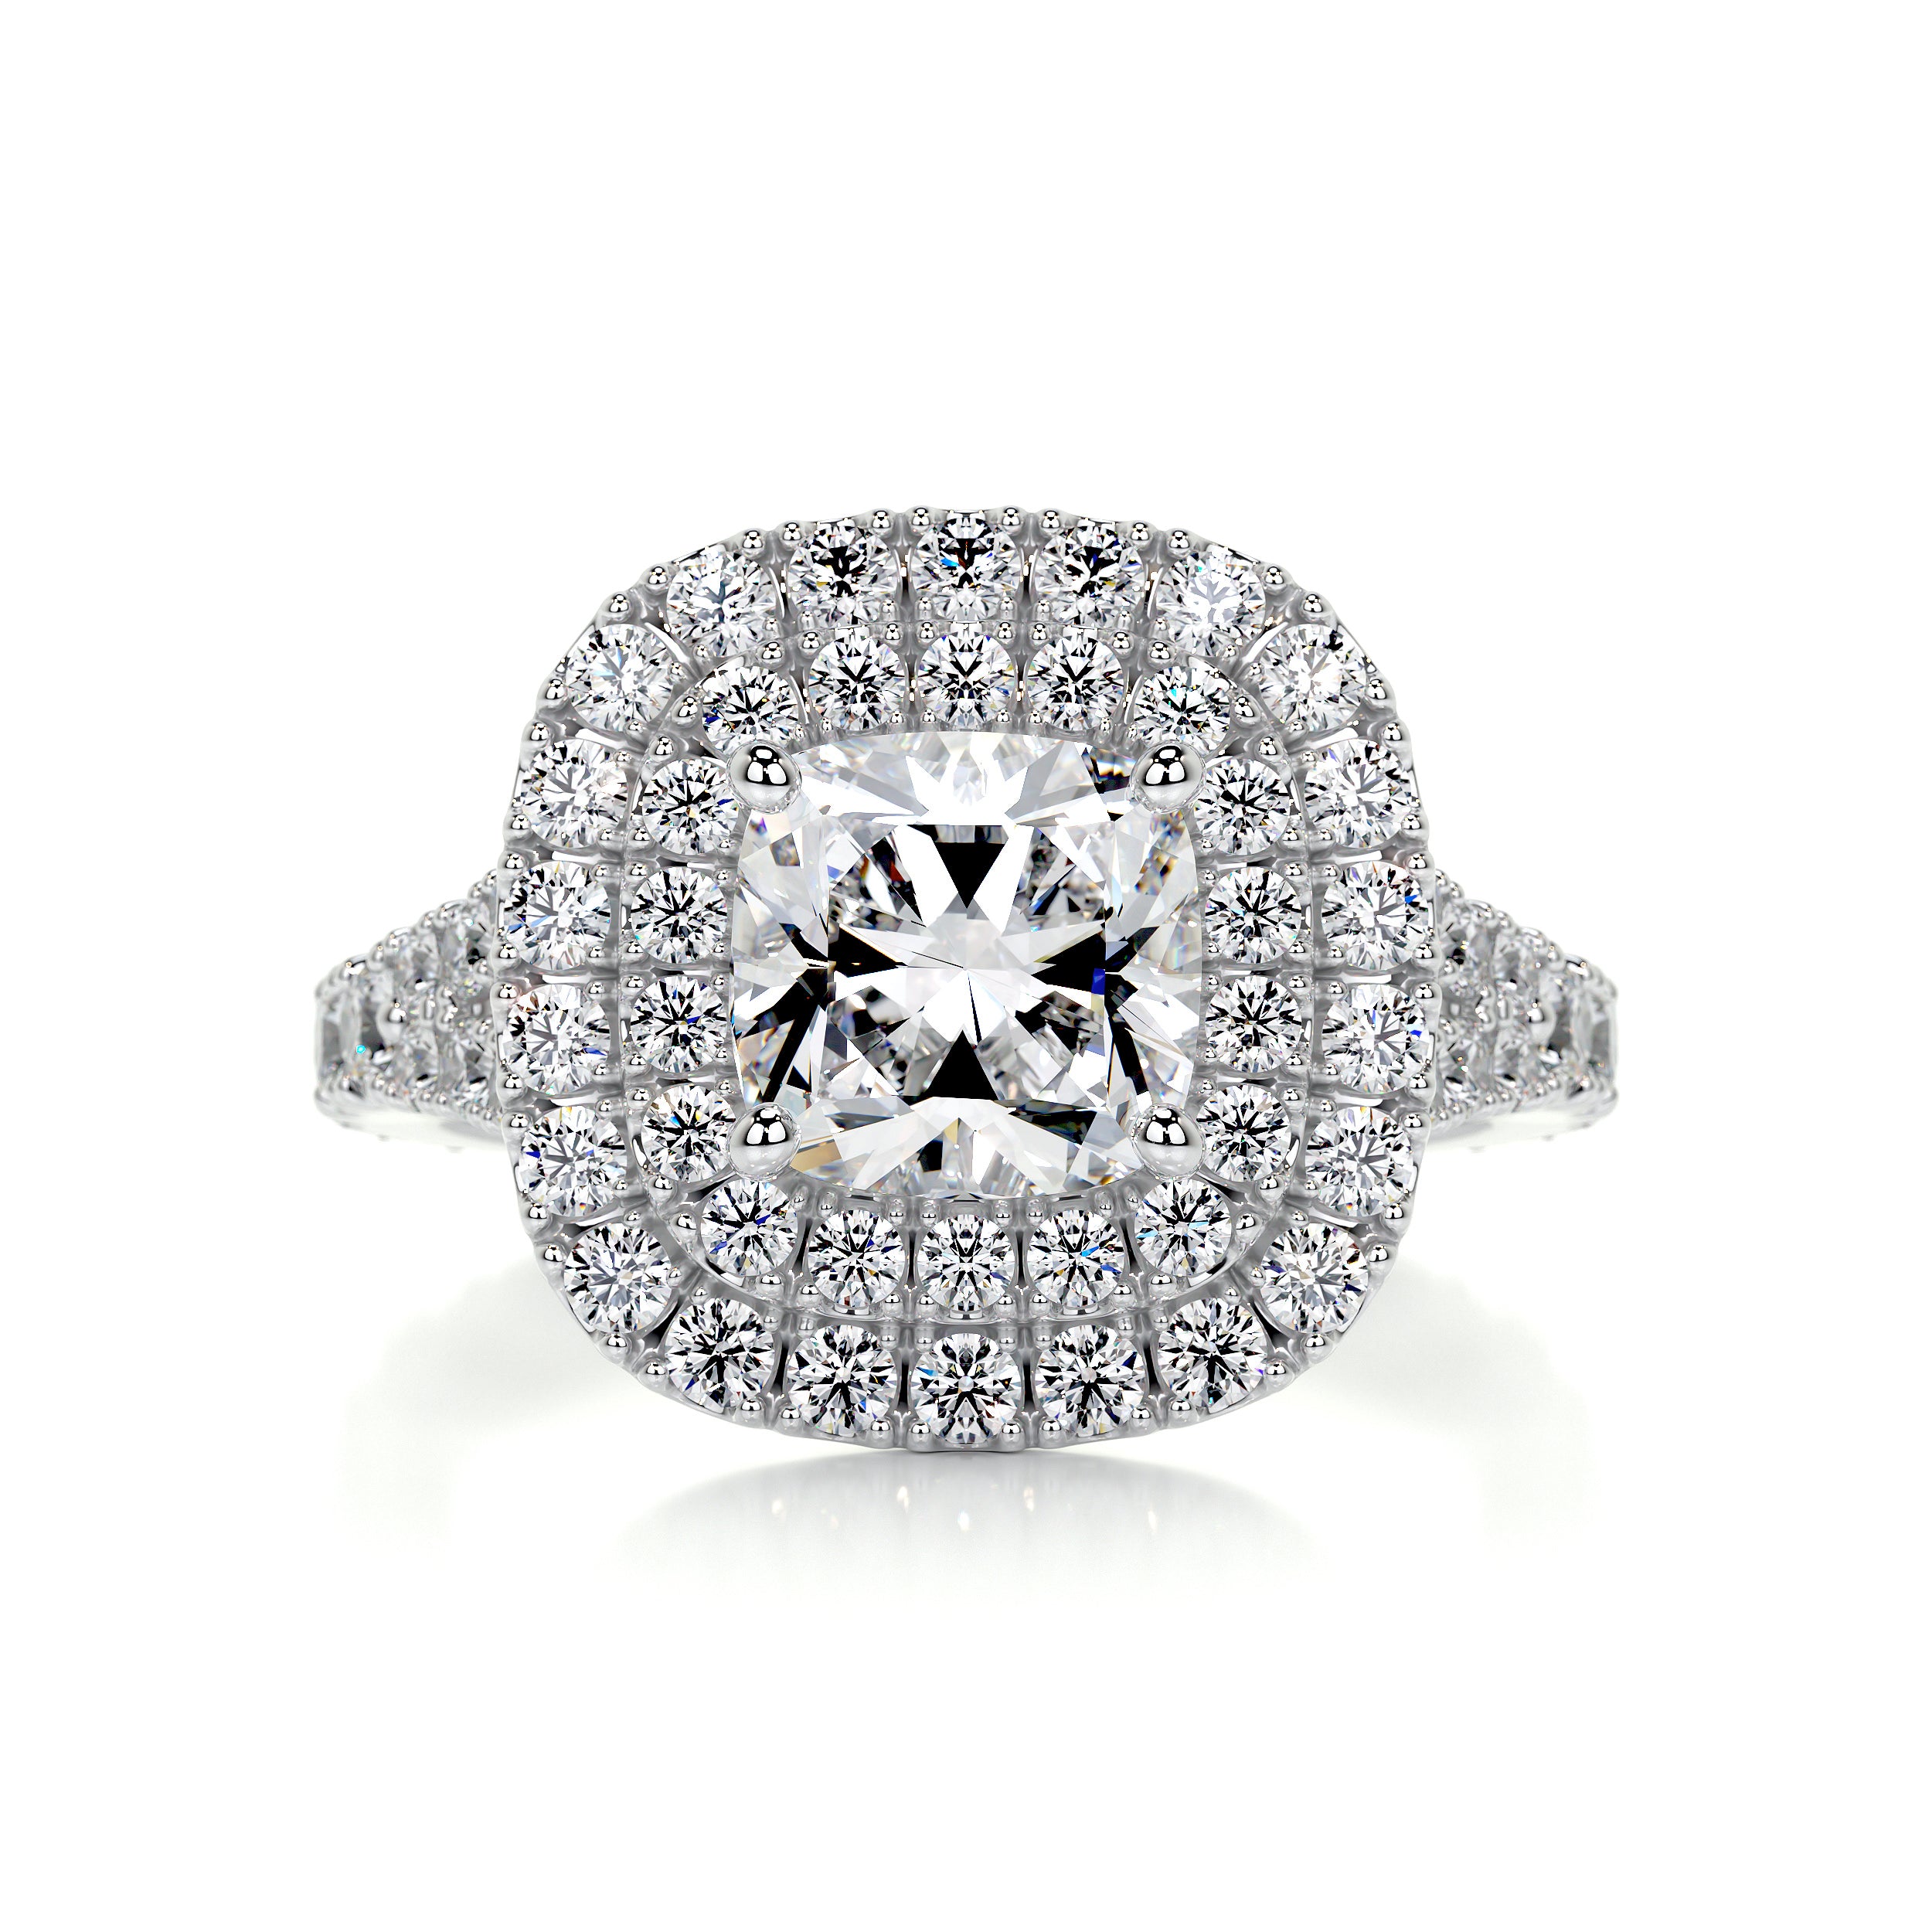 Tina Diamond Engagement Ring   (2.5 Carat) -18K White Gold